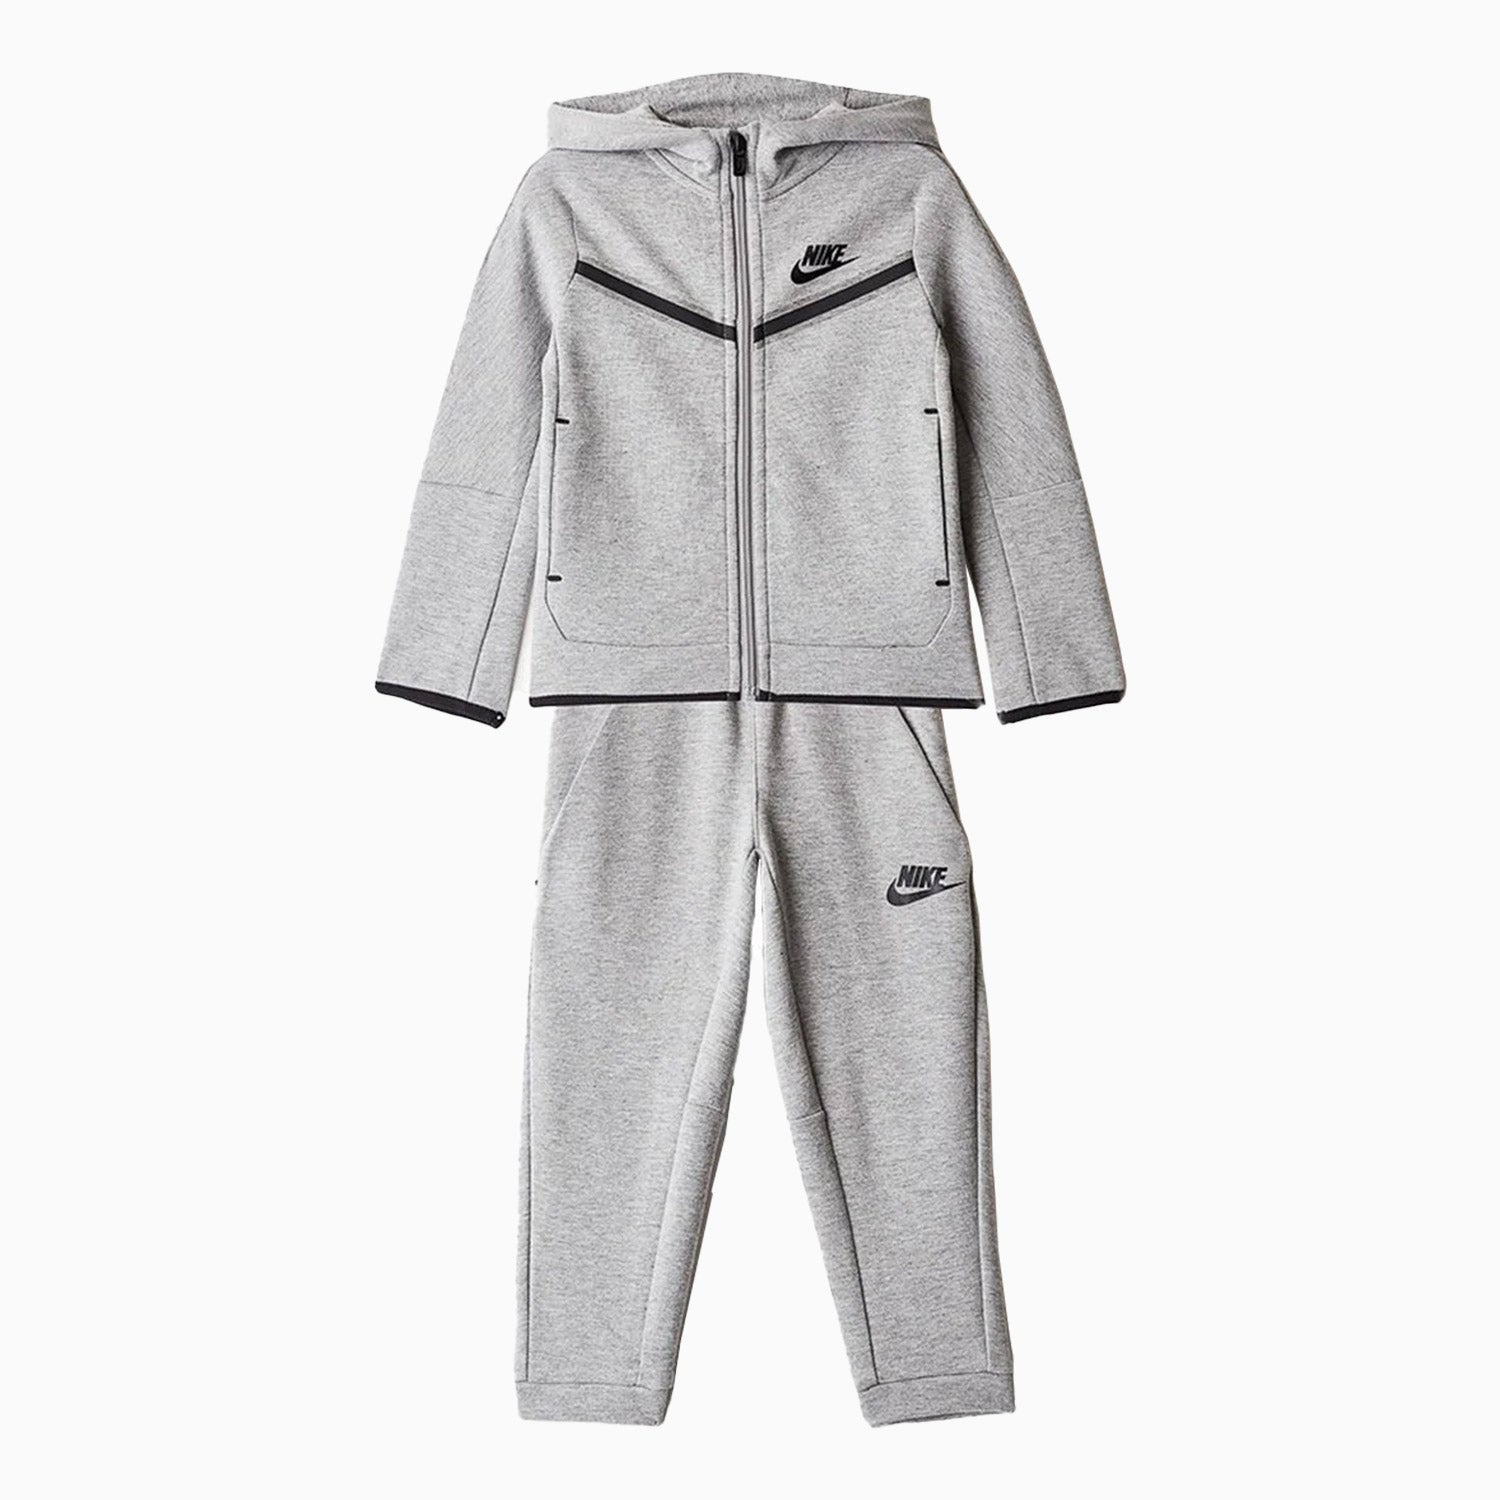 nike-kids-sportswear-tech-fleece-outfit-set-toddlers-76h052-042